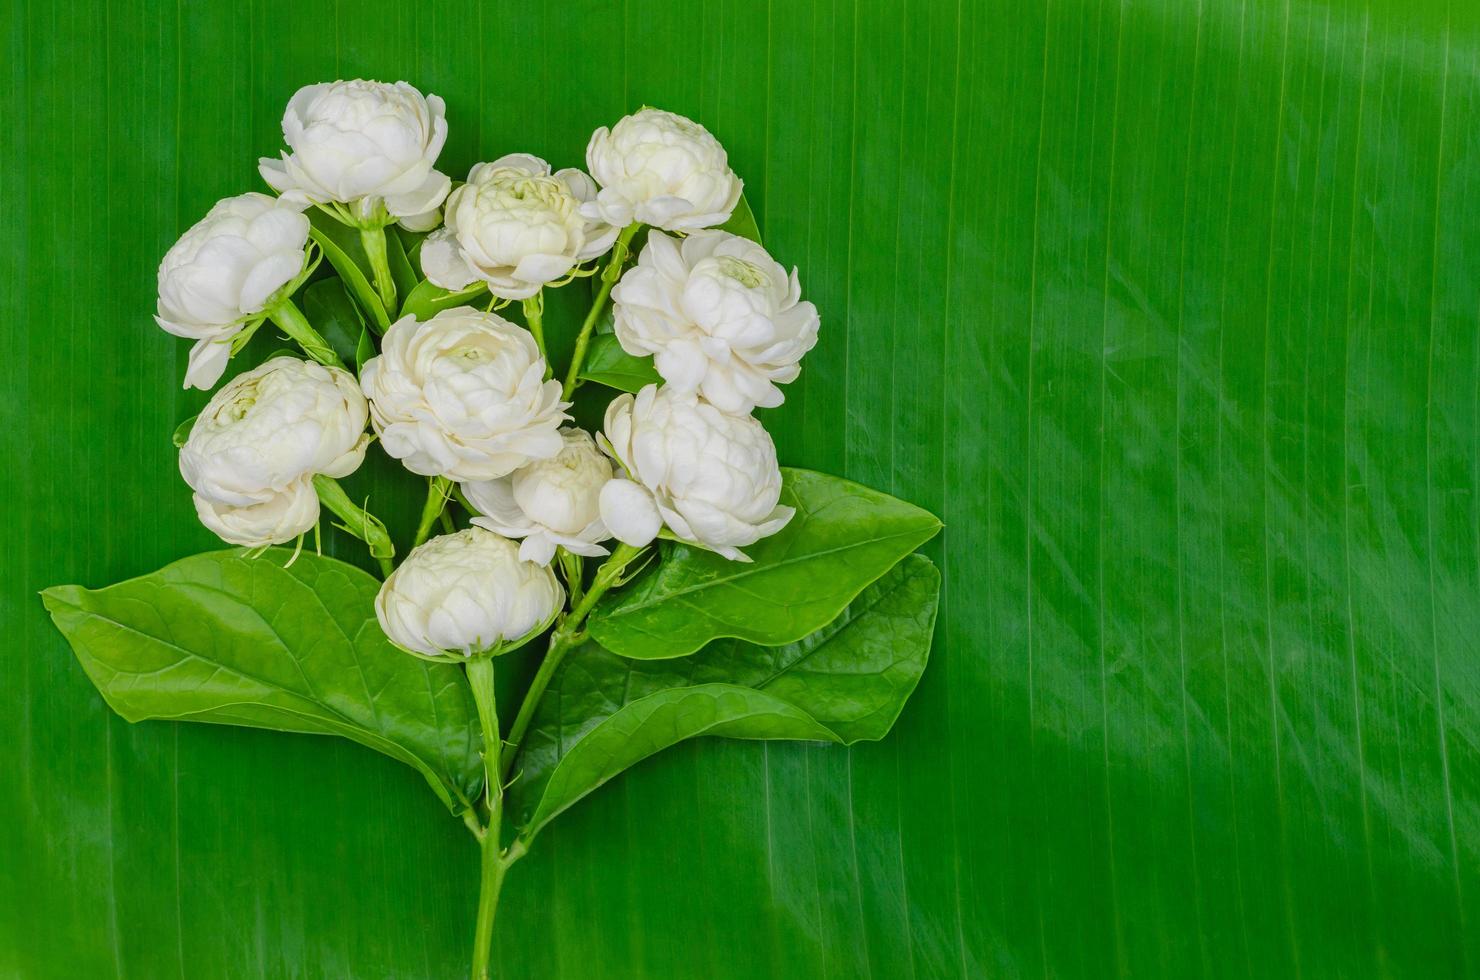 flor blanca fresca de jazmín de tailandia con sus hojas en forma de corazón en hoja de plátano para el concepto del día de la madre en tailandia en agosto. foto